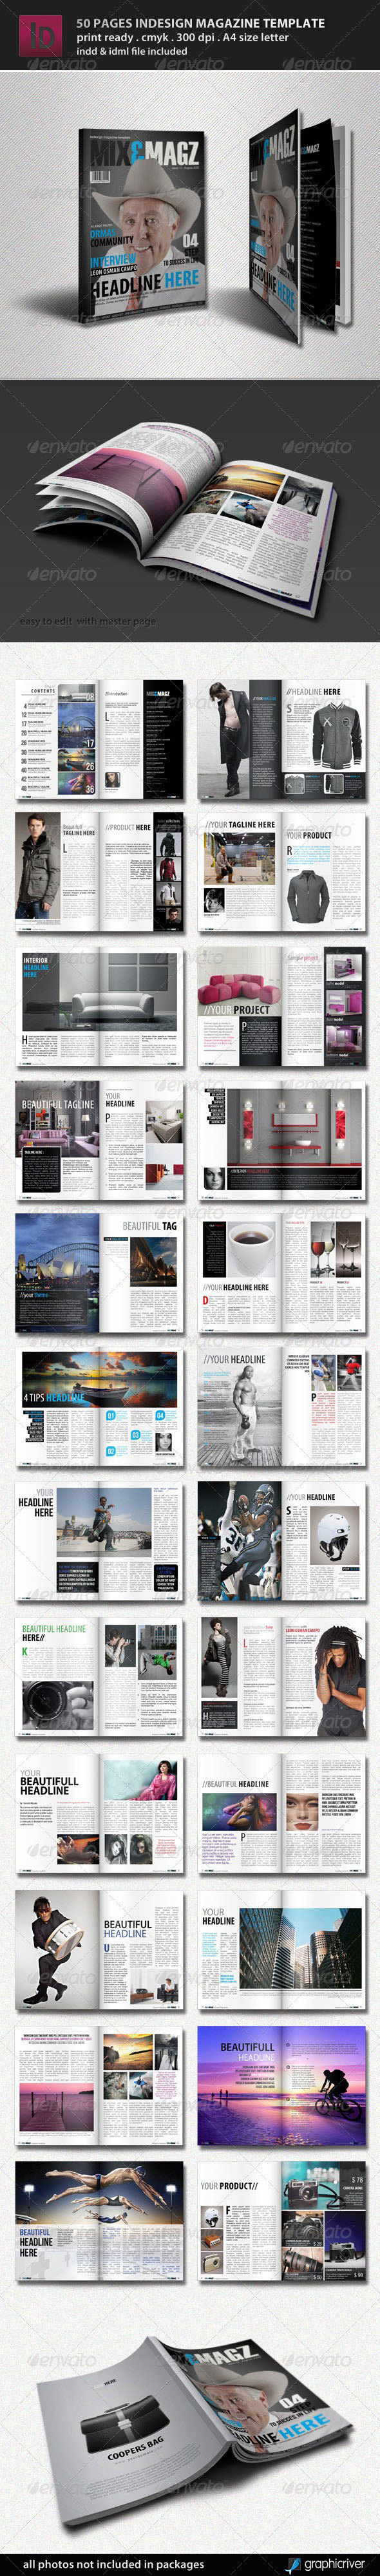 قالب 50 صفحه ای مجله این دیزاین